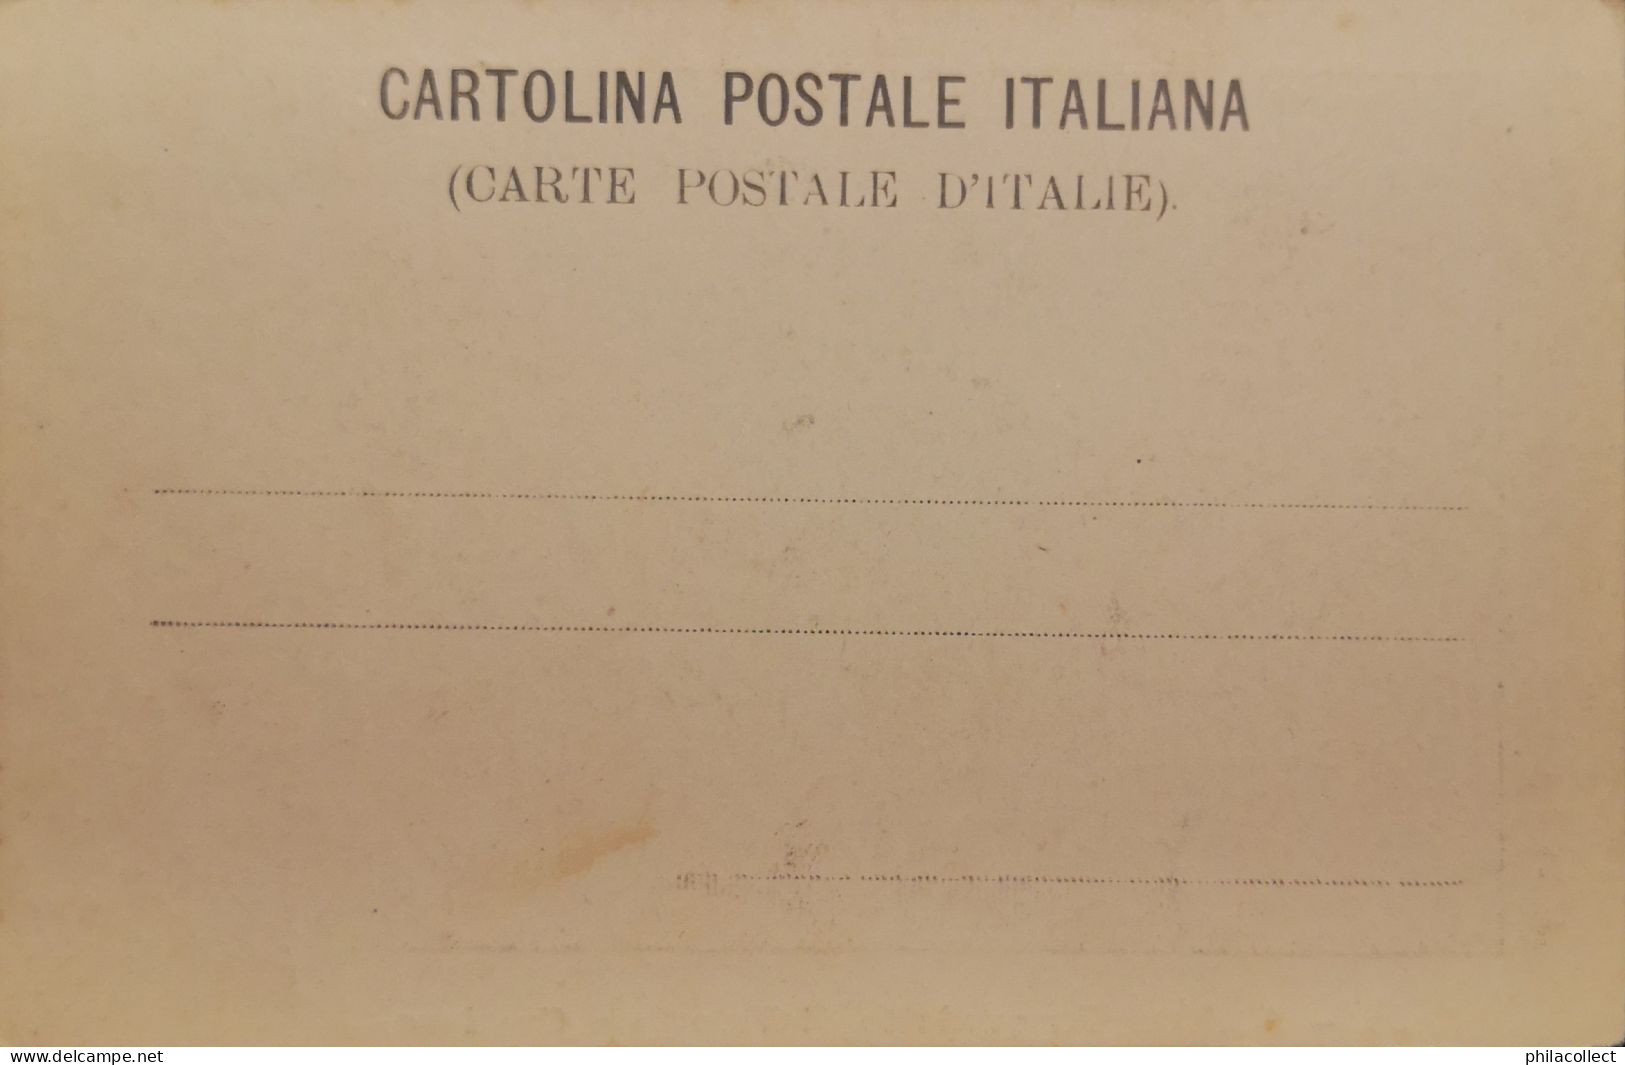 Italy - Piemonte // Susa (Torino) Arci Dell Acquedotto Di Valente E Graziano Ca 1899 - Other & Unclassified